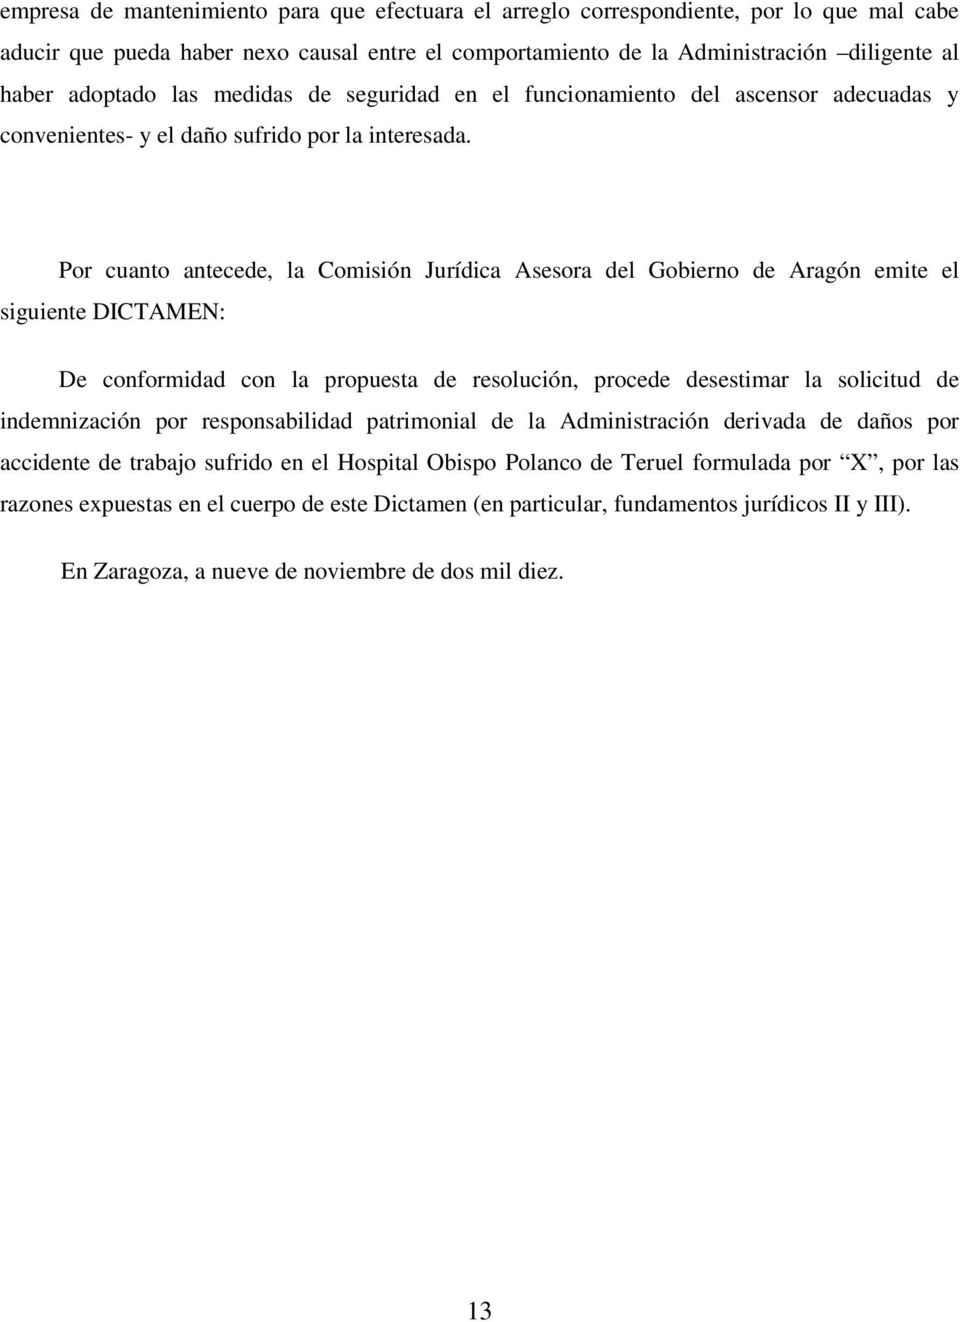 Por cuanto antecede, la Comisión Jurídica Asesora del Gobierno de Aragón emite el siguiente DICTAMEN: De conformidad con la propuesta de resolución, procede desestimar la solicitud de indemnización